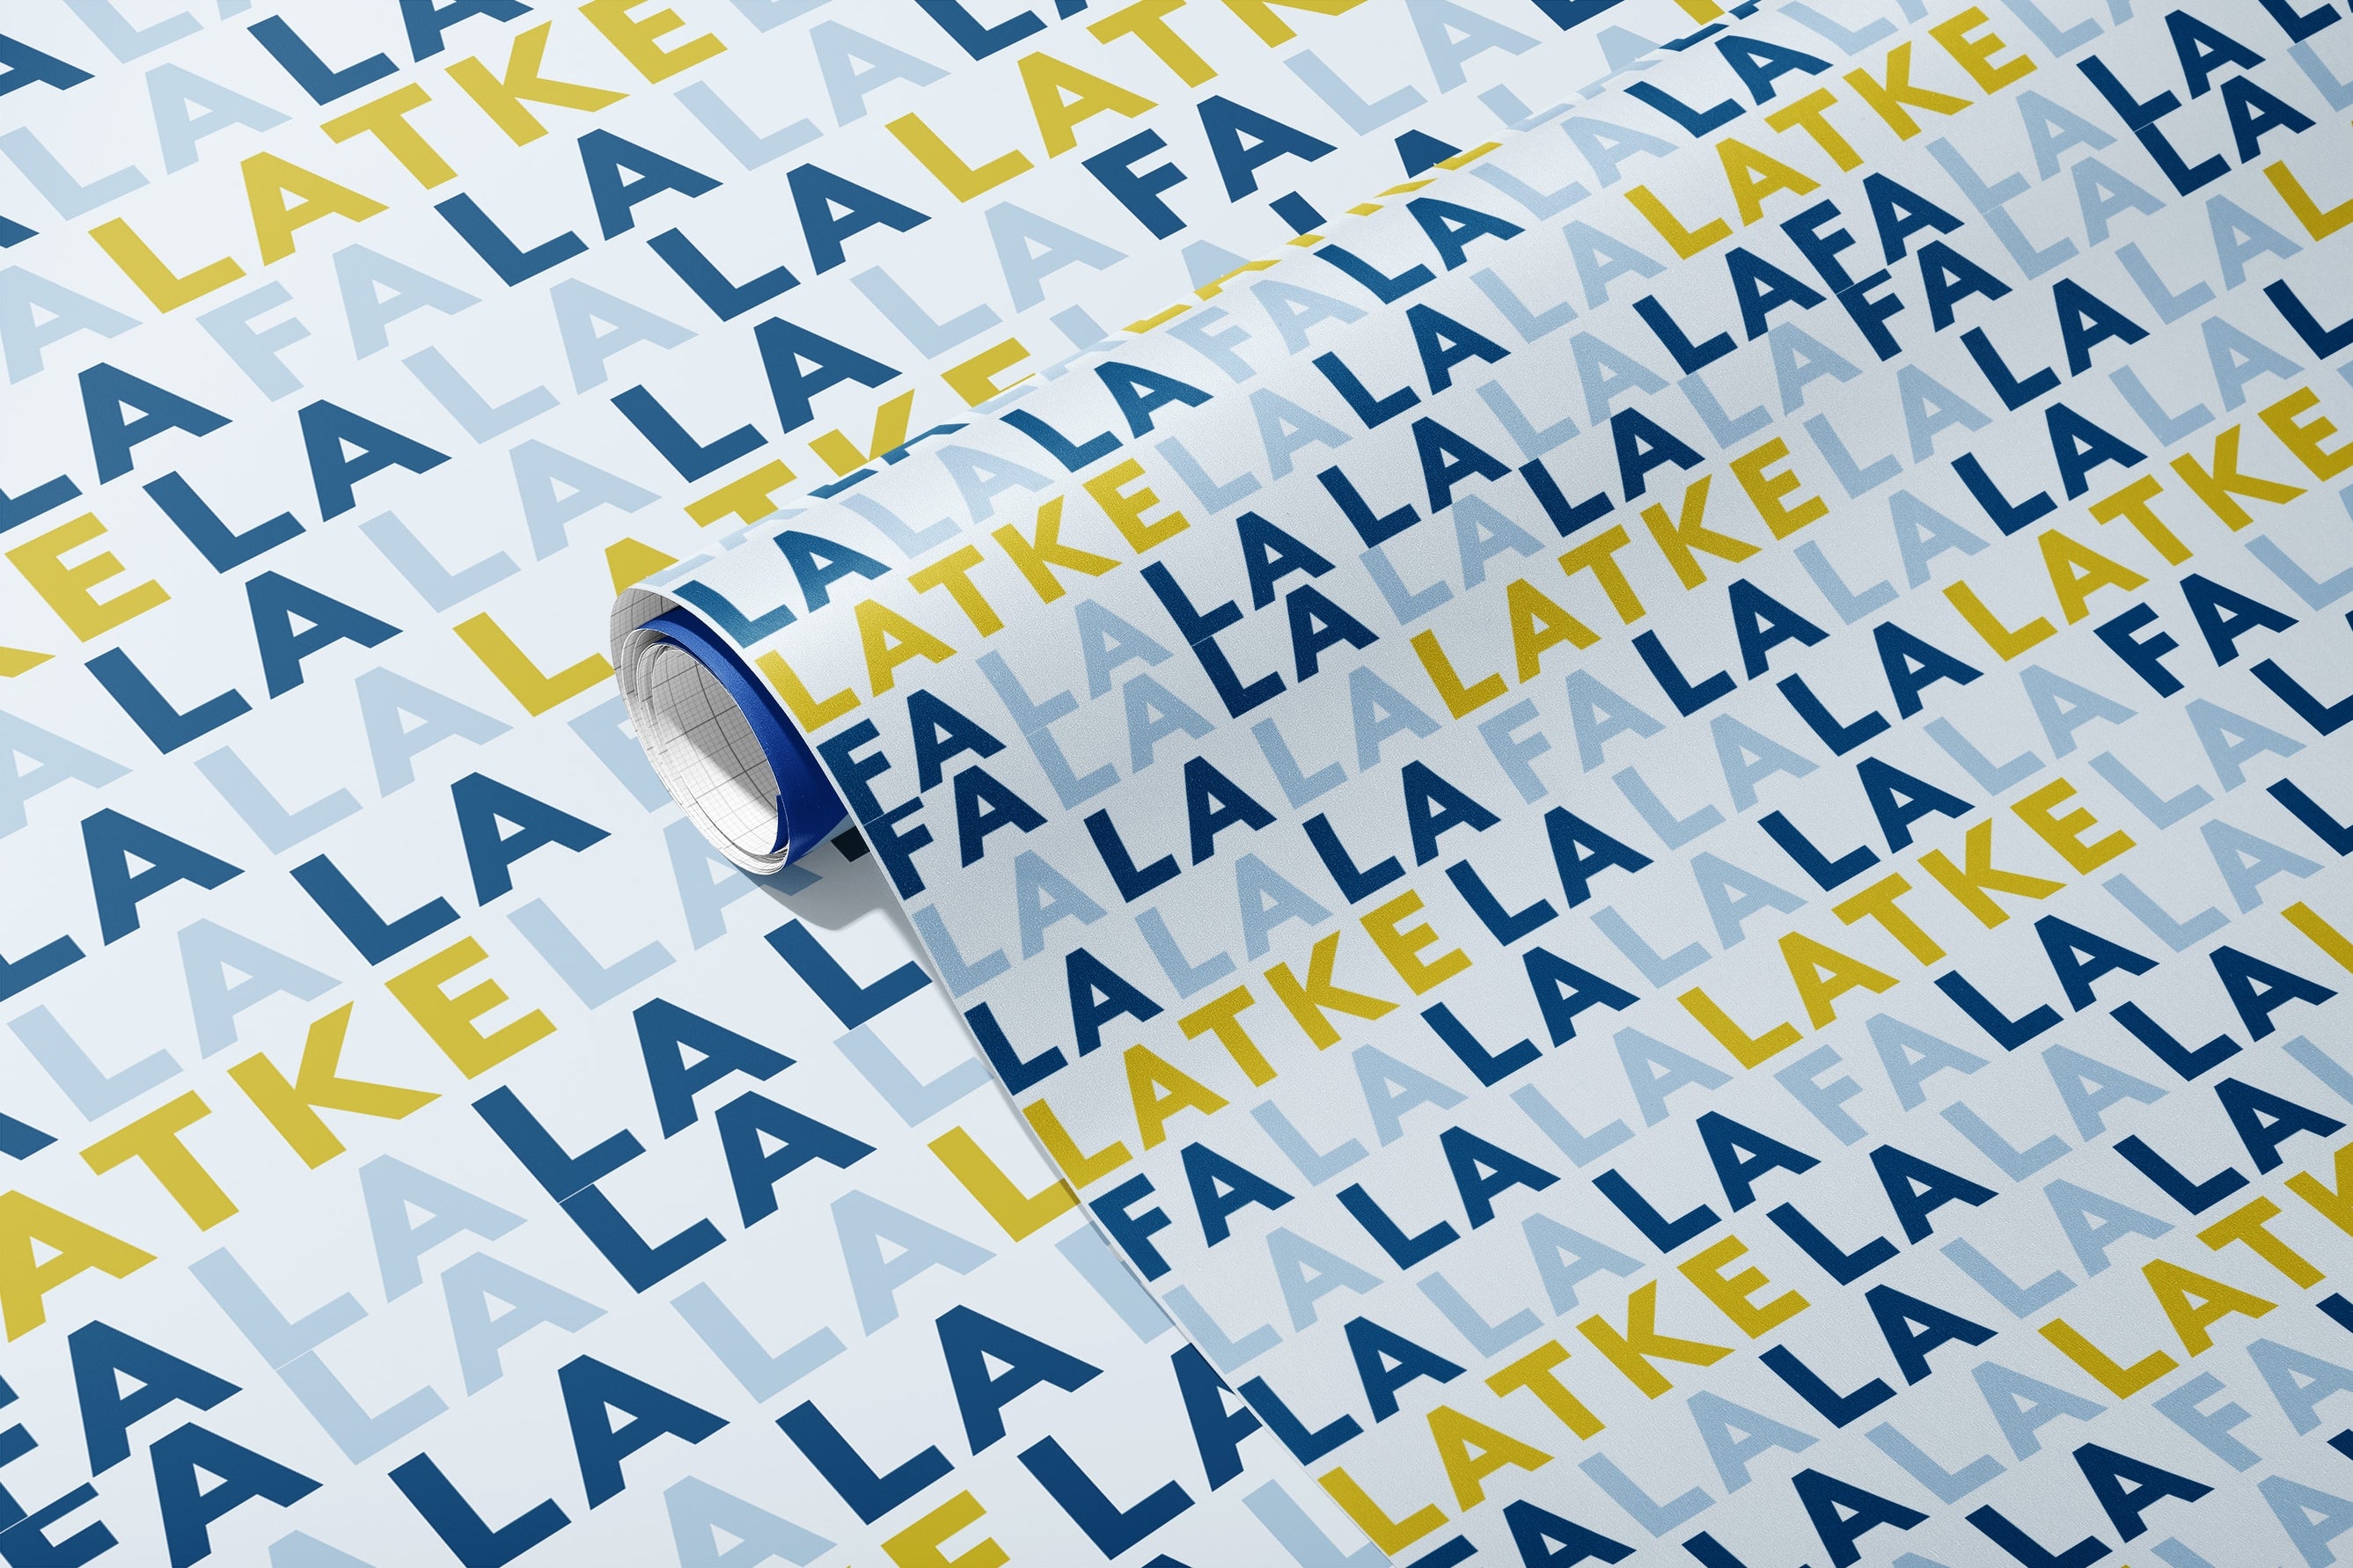 Fa La La La Latke Gift Wrap Sheets